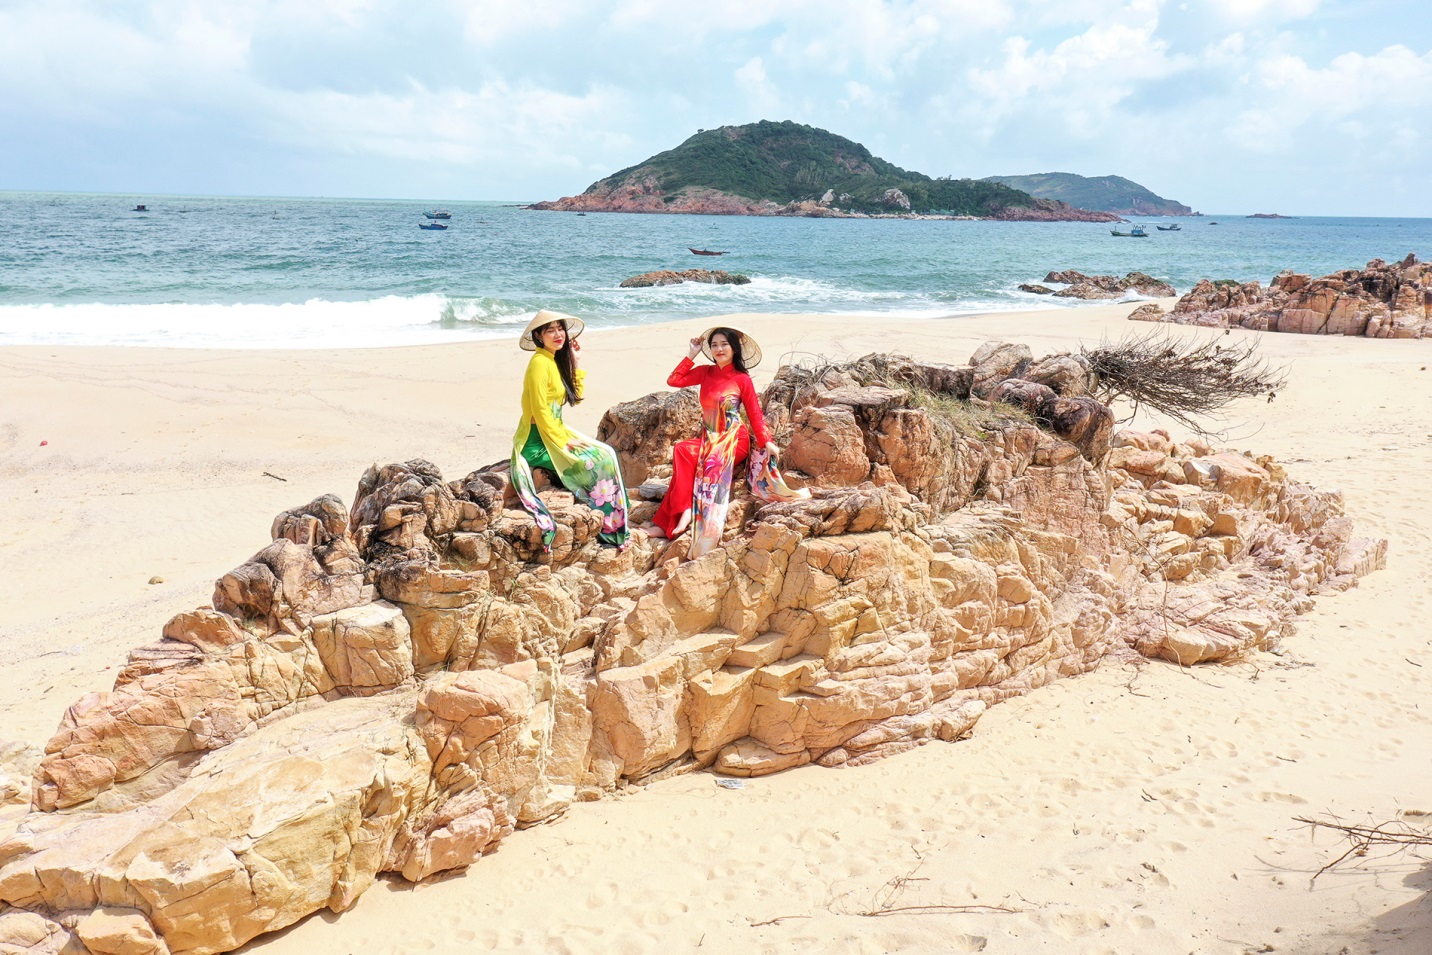 Eo biển thơ mộng quyến rũ du khách dọc bờ biển Bình Định - 9